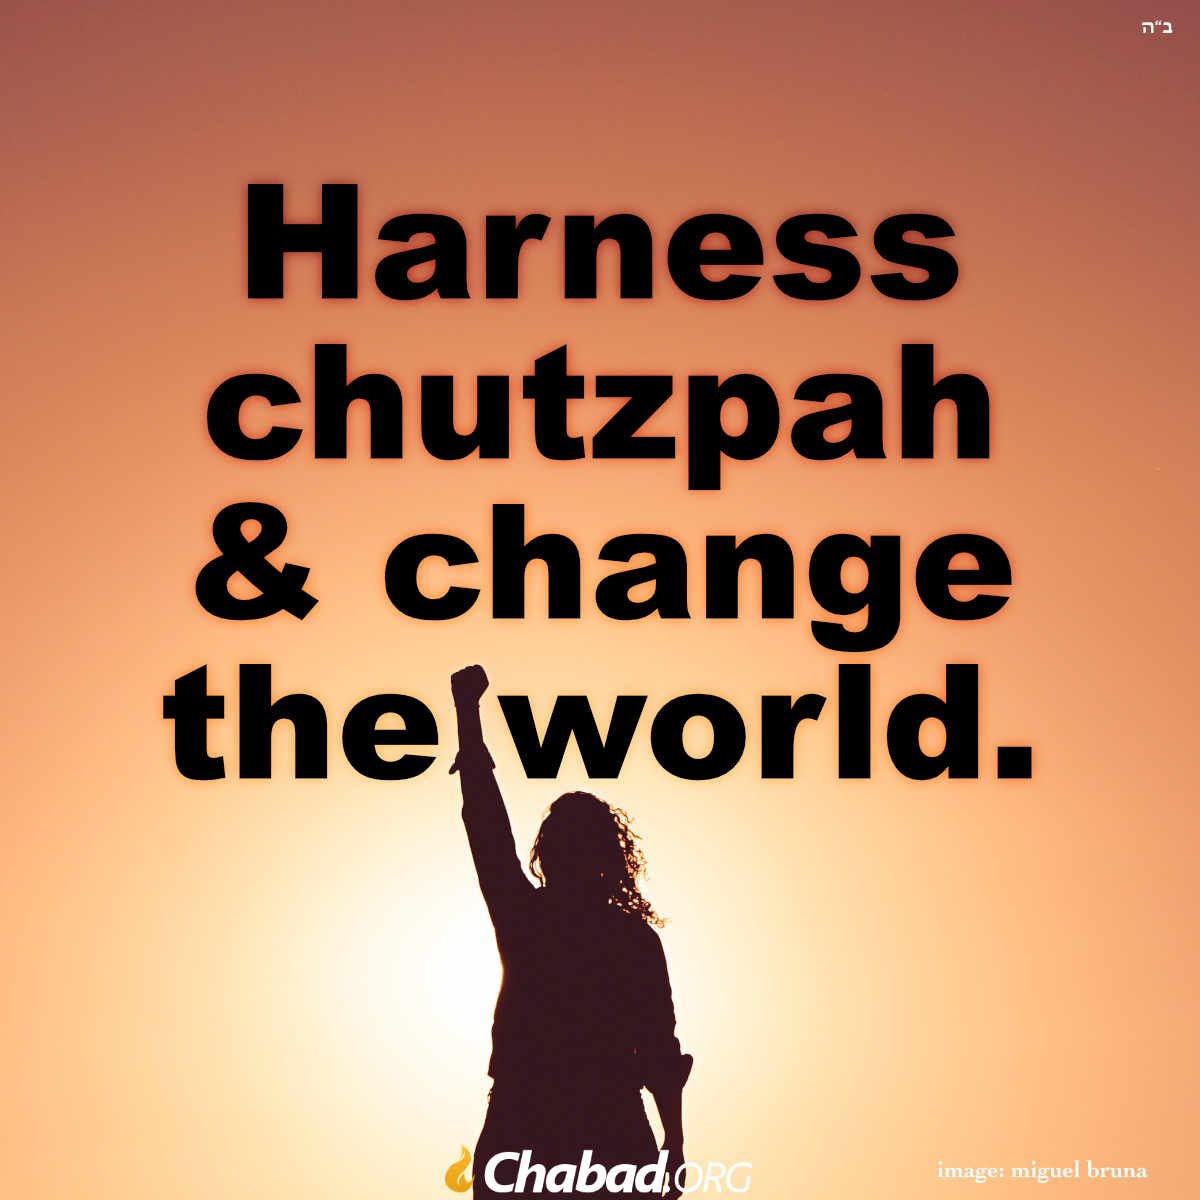 Chutzpah Magazine